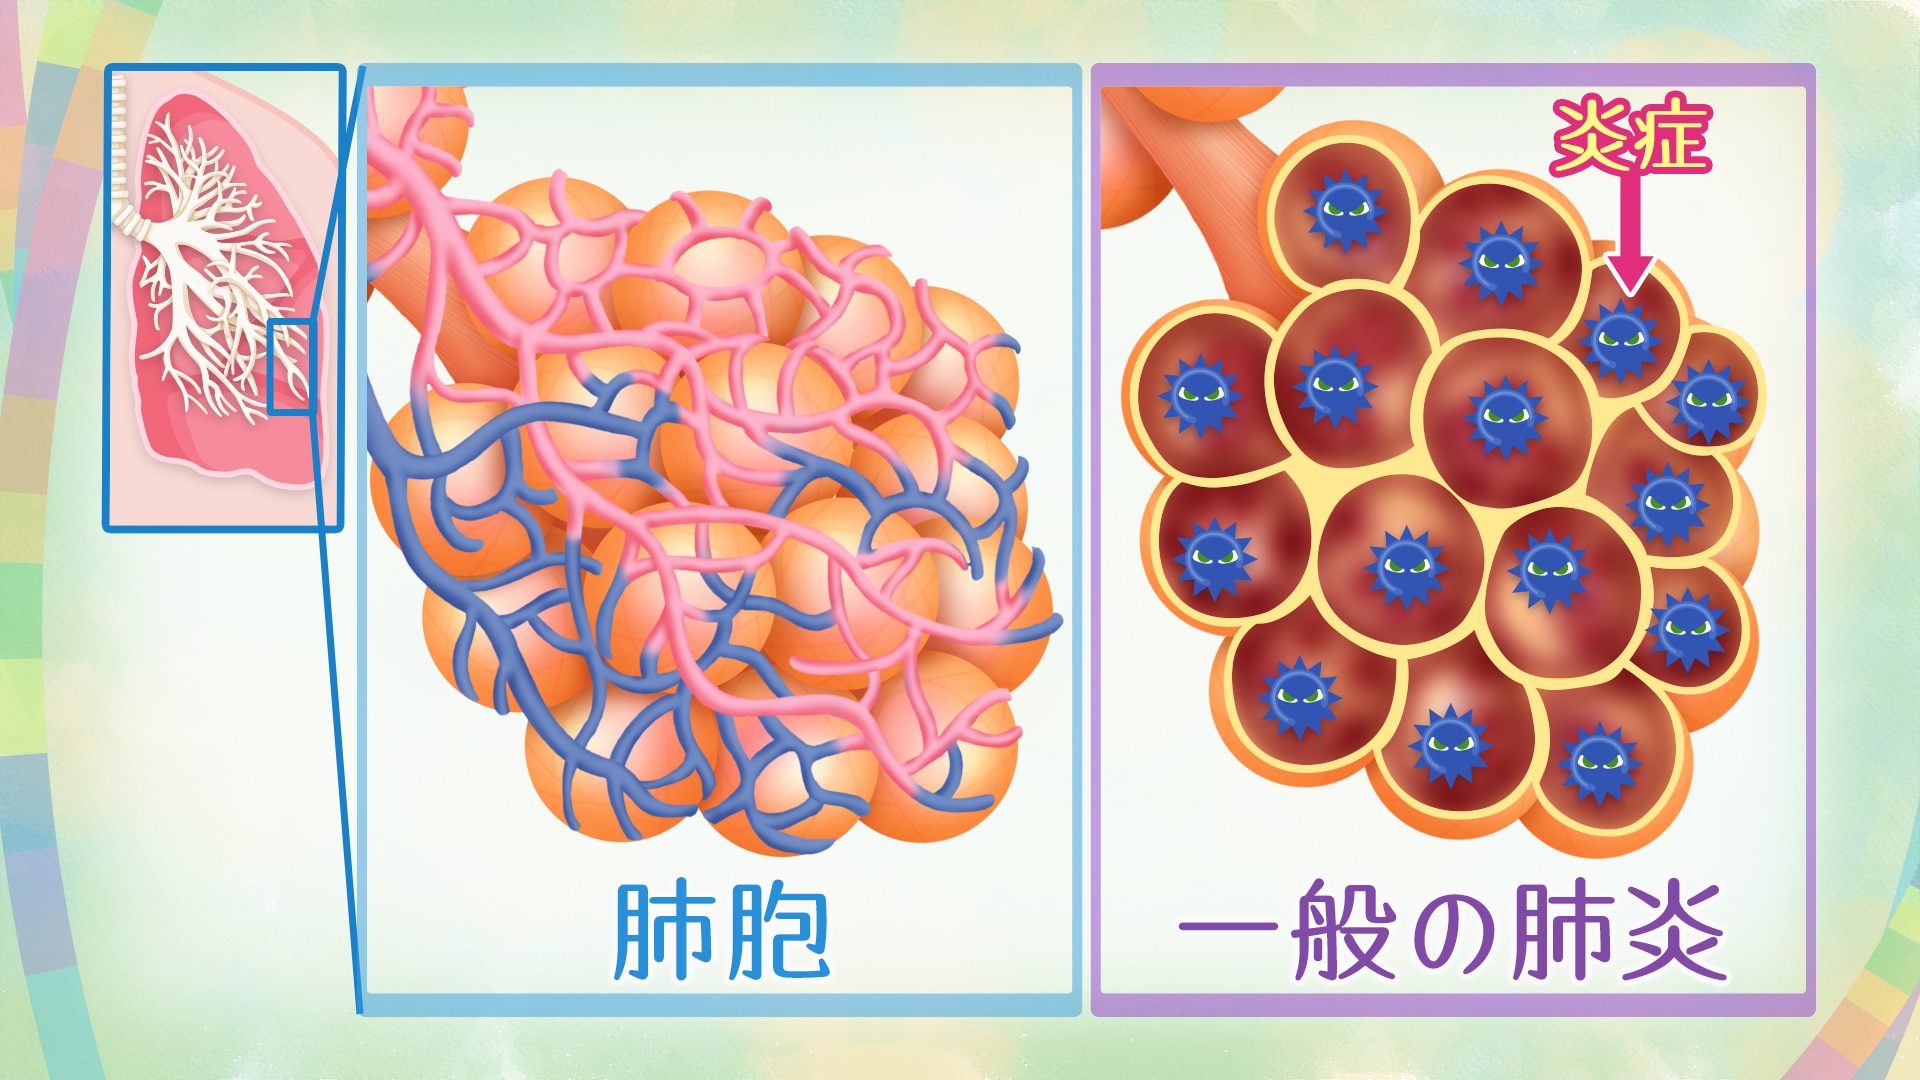 NHK健康チャンネルで確かな医療・健康情報を息切れなどの症状が出る間質性肺炎 治療法や診断、特発性肺線維症について